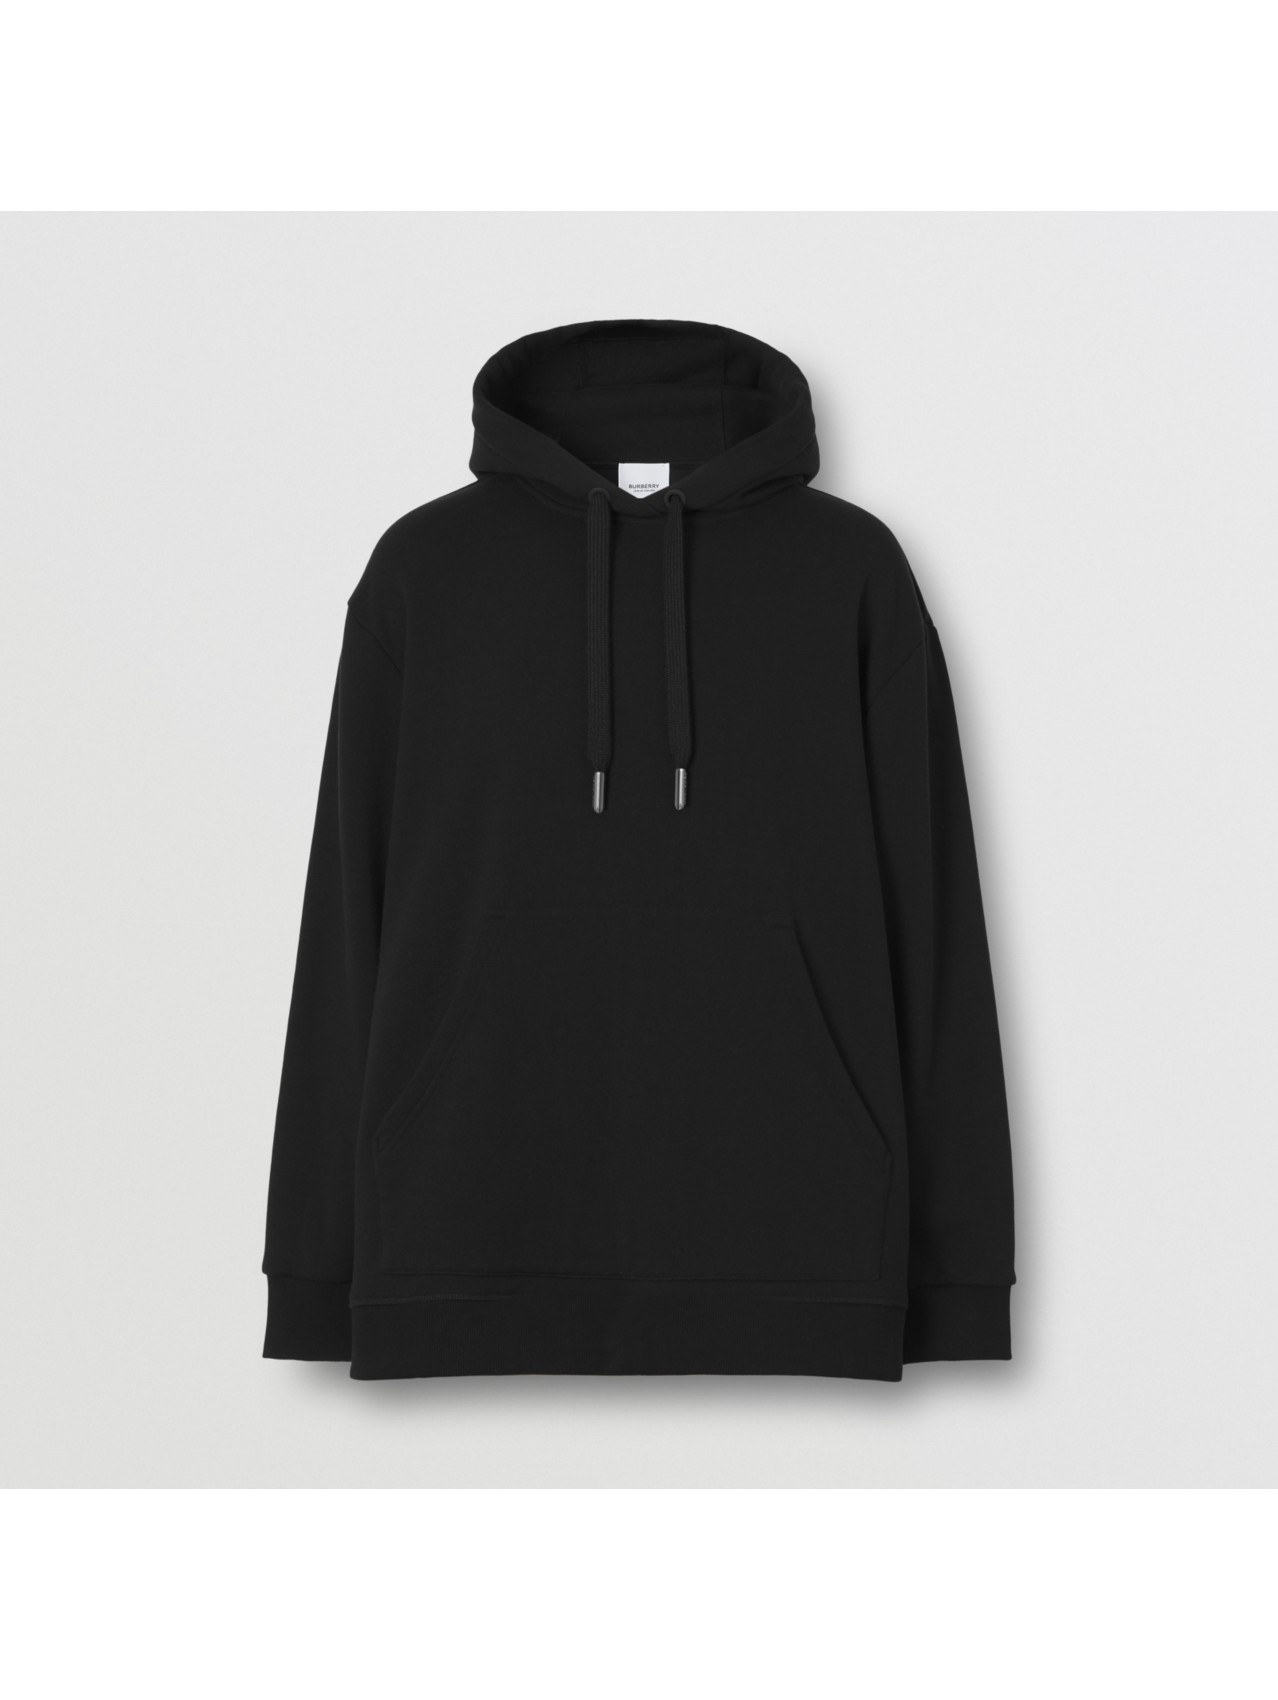 Women’s Designer Hoodies & Sweatshirts | Burberry® Official